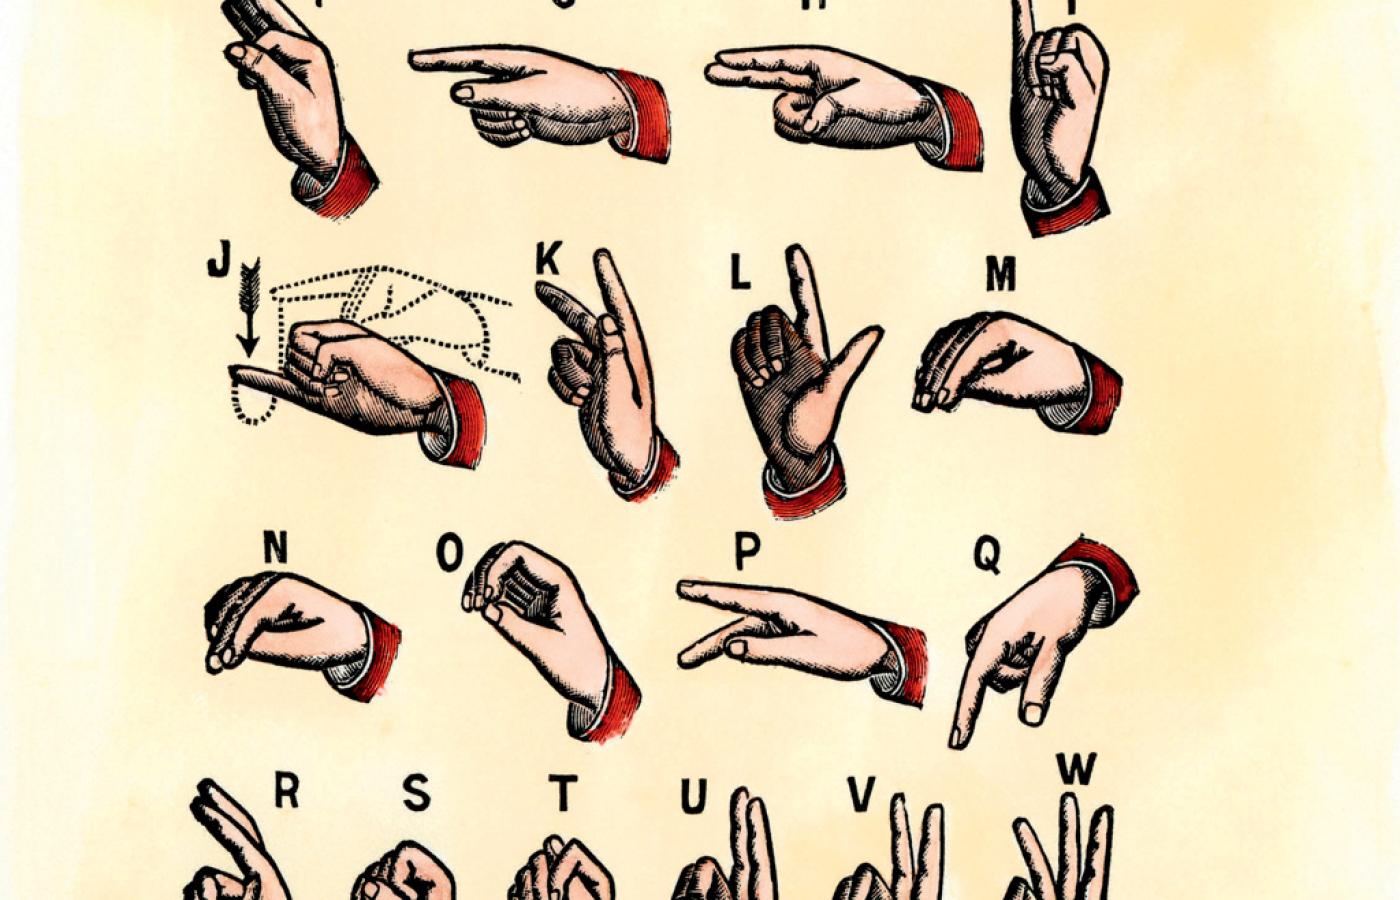 Kolorowany drzeworyt z alfabetem migowym używanym w USA, początek XIX w.